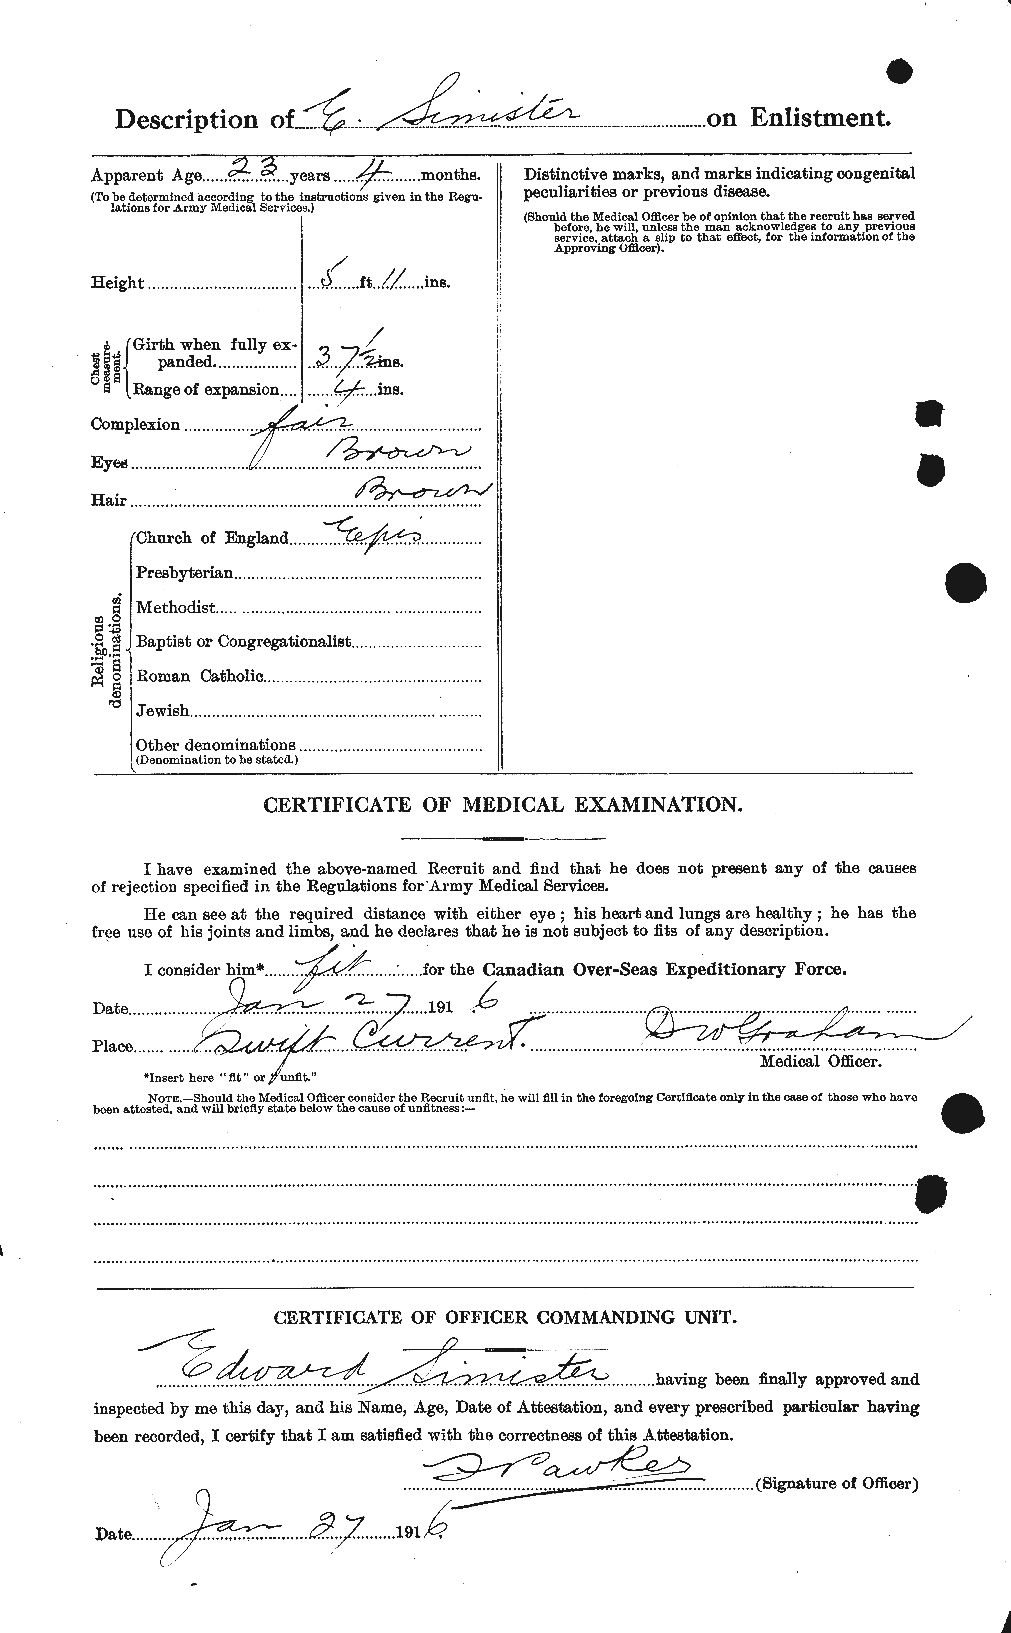 Dossiers du Personnel de la Première Guerre mondiale - CEC 100257b